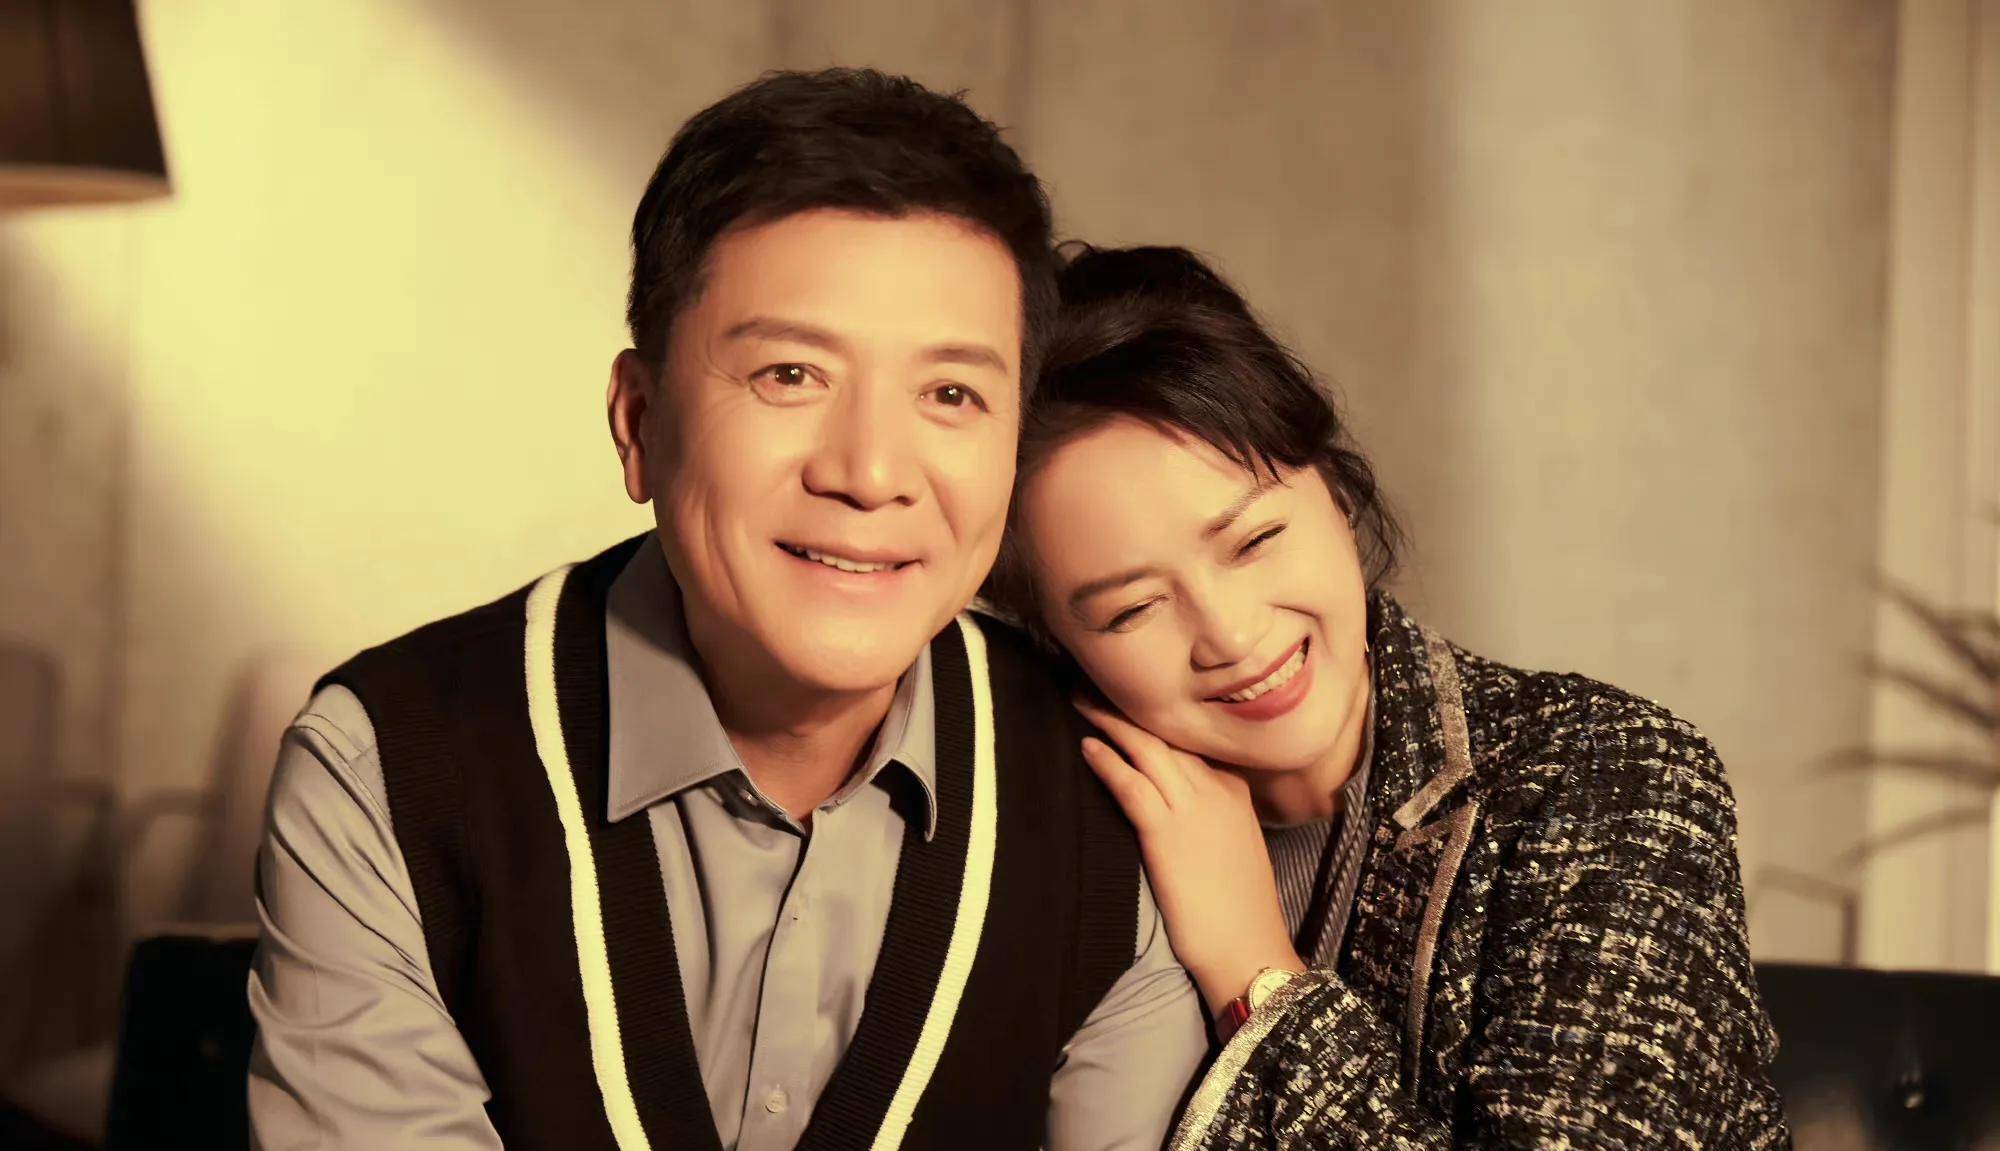 55岁茹萍姐姐和二婚老公庆祝结婚23周年,两人笑容甜蜜